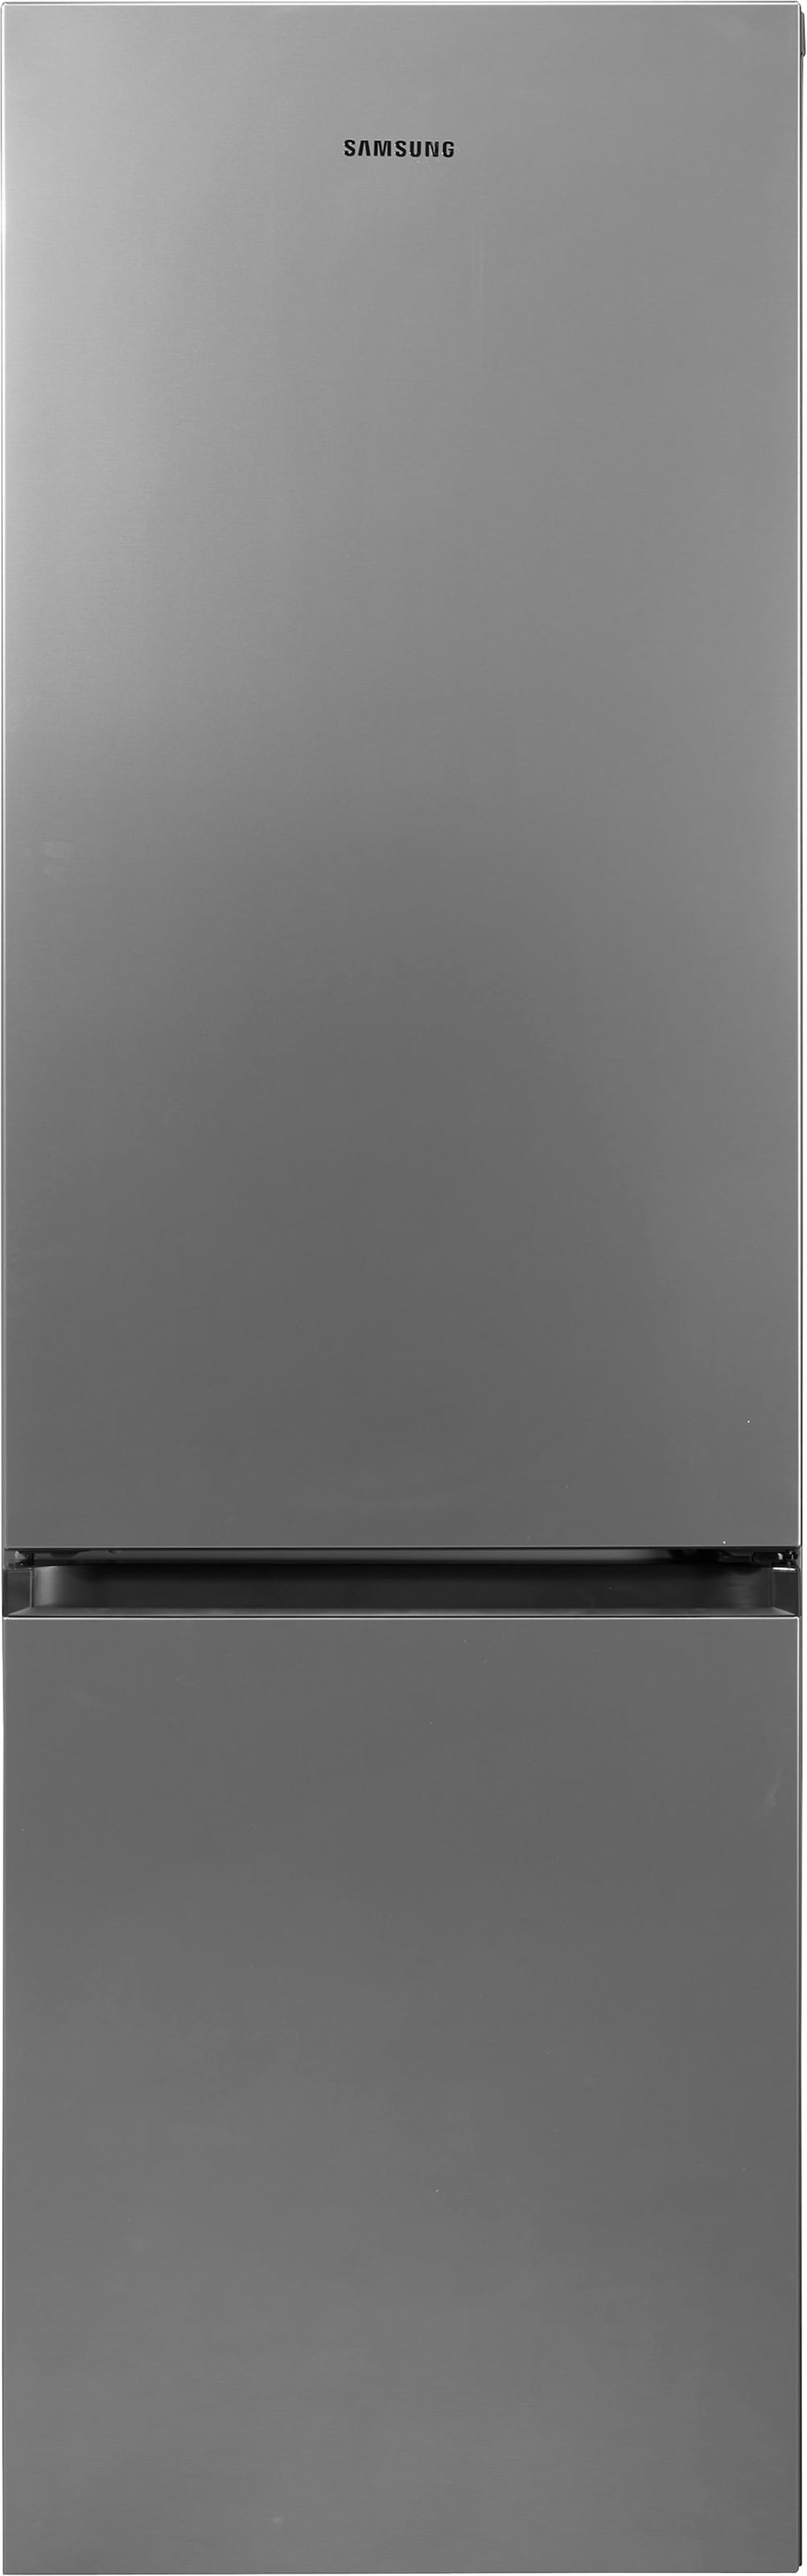 Samsung Kühl-/Gefrierkombination, RL36T600CSA, 193,5 cm hoch, 59,5 cm breit